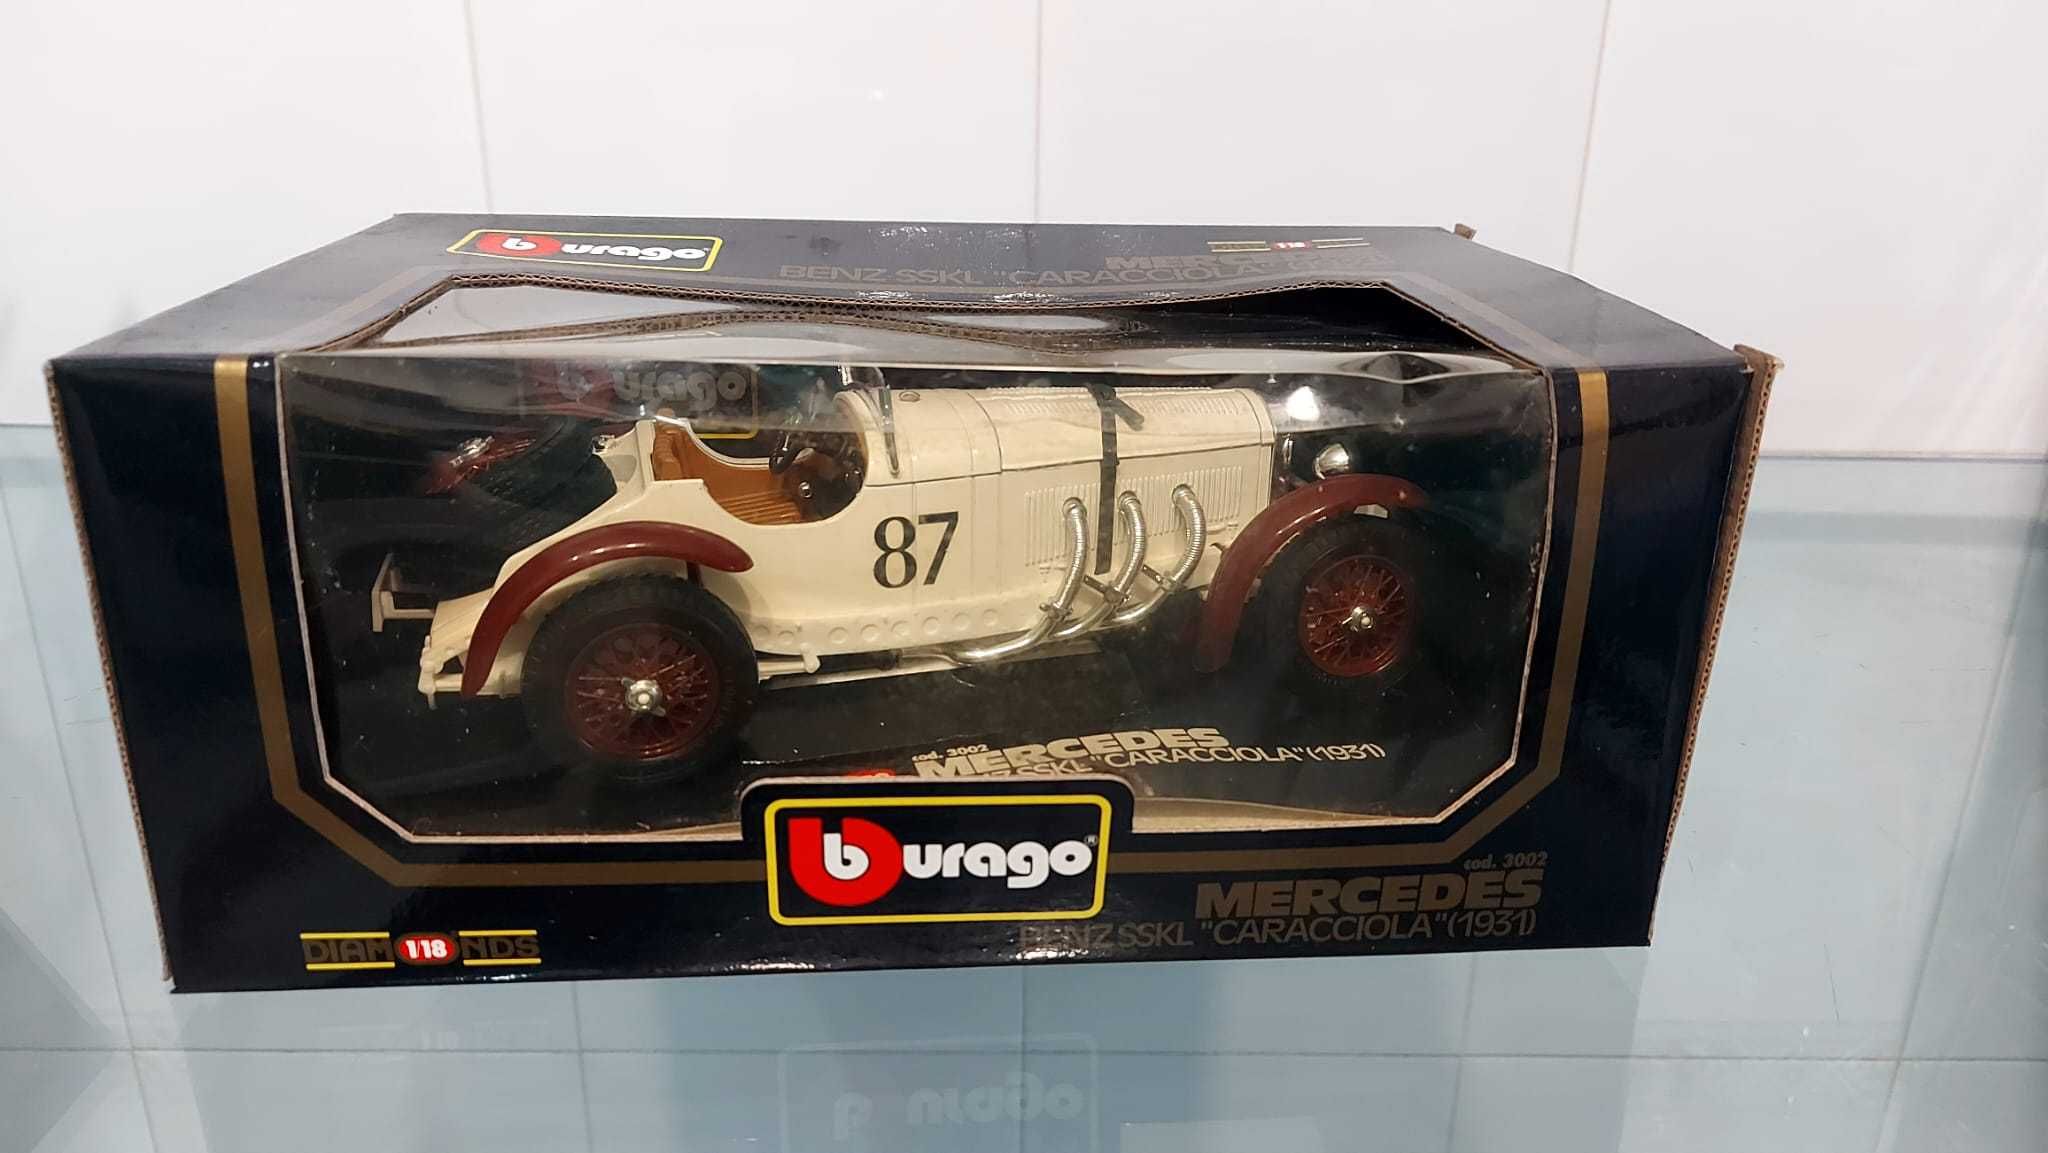 Burago Mercedes Benz "Caracciola" 1931 1/18